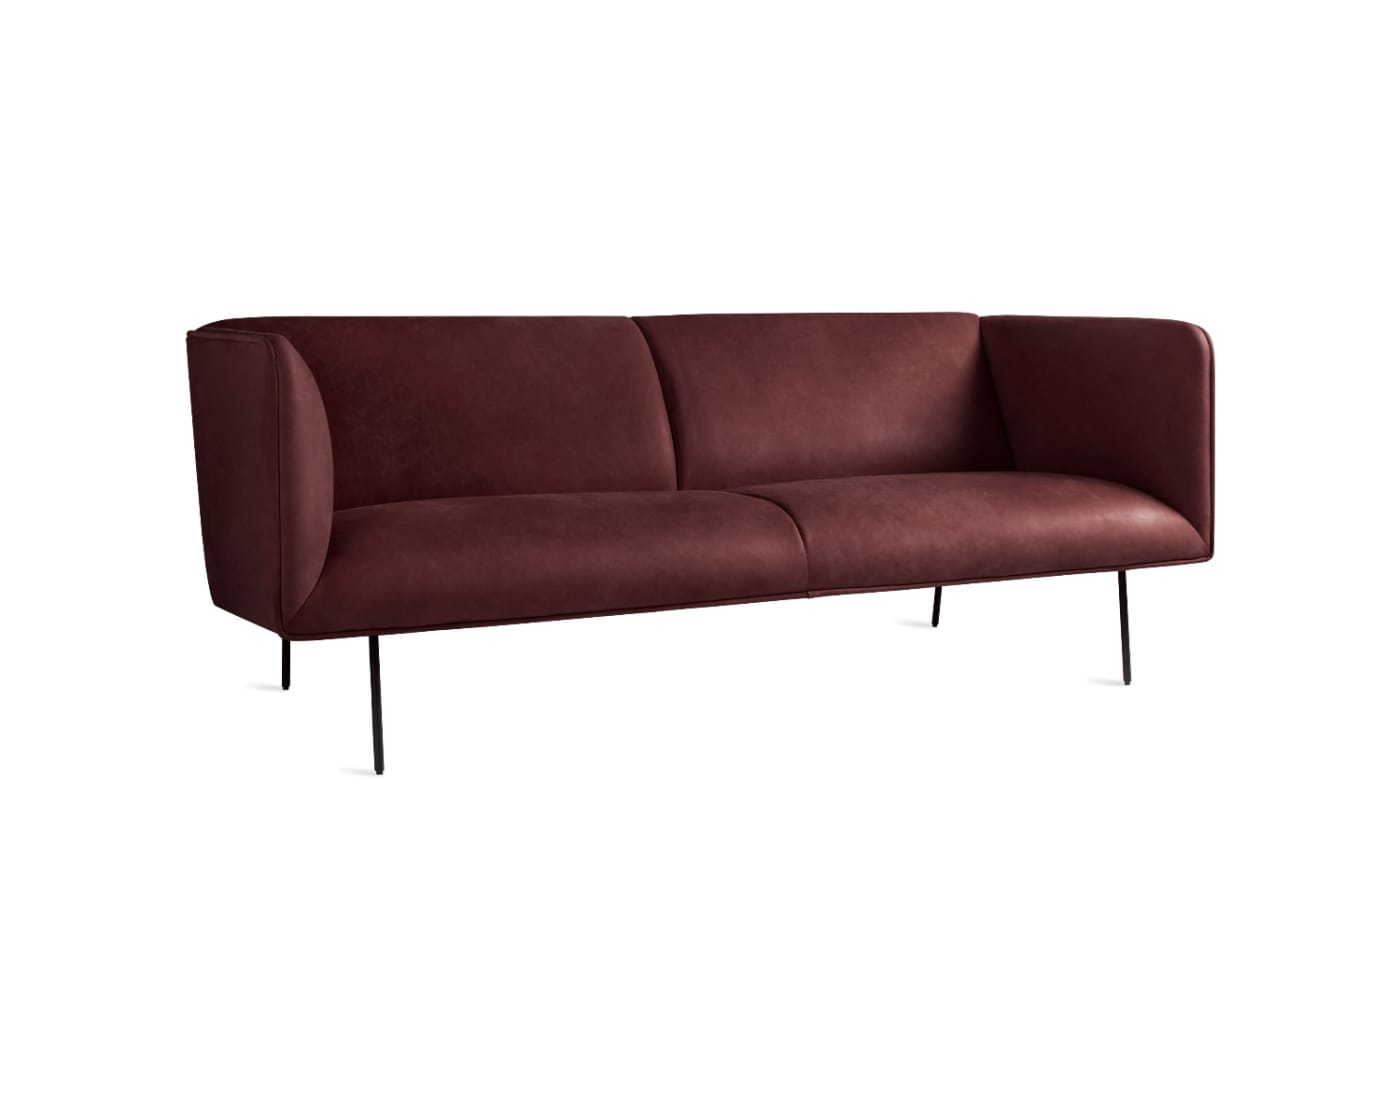 Dandy 86" Sofa